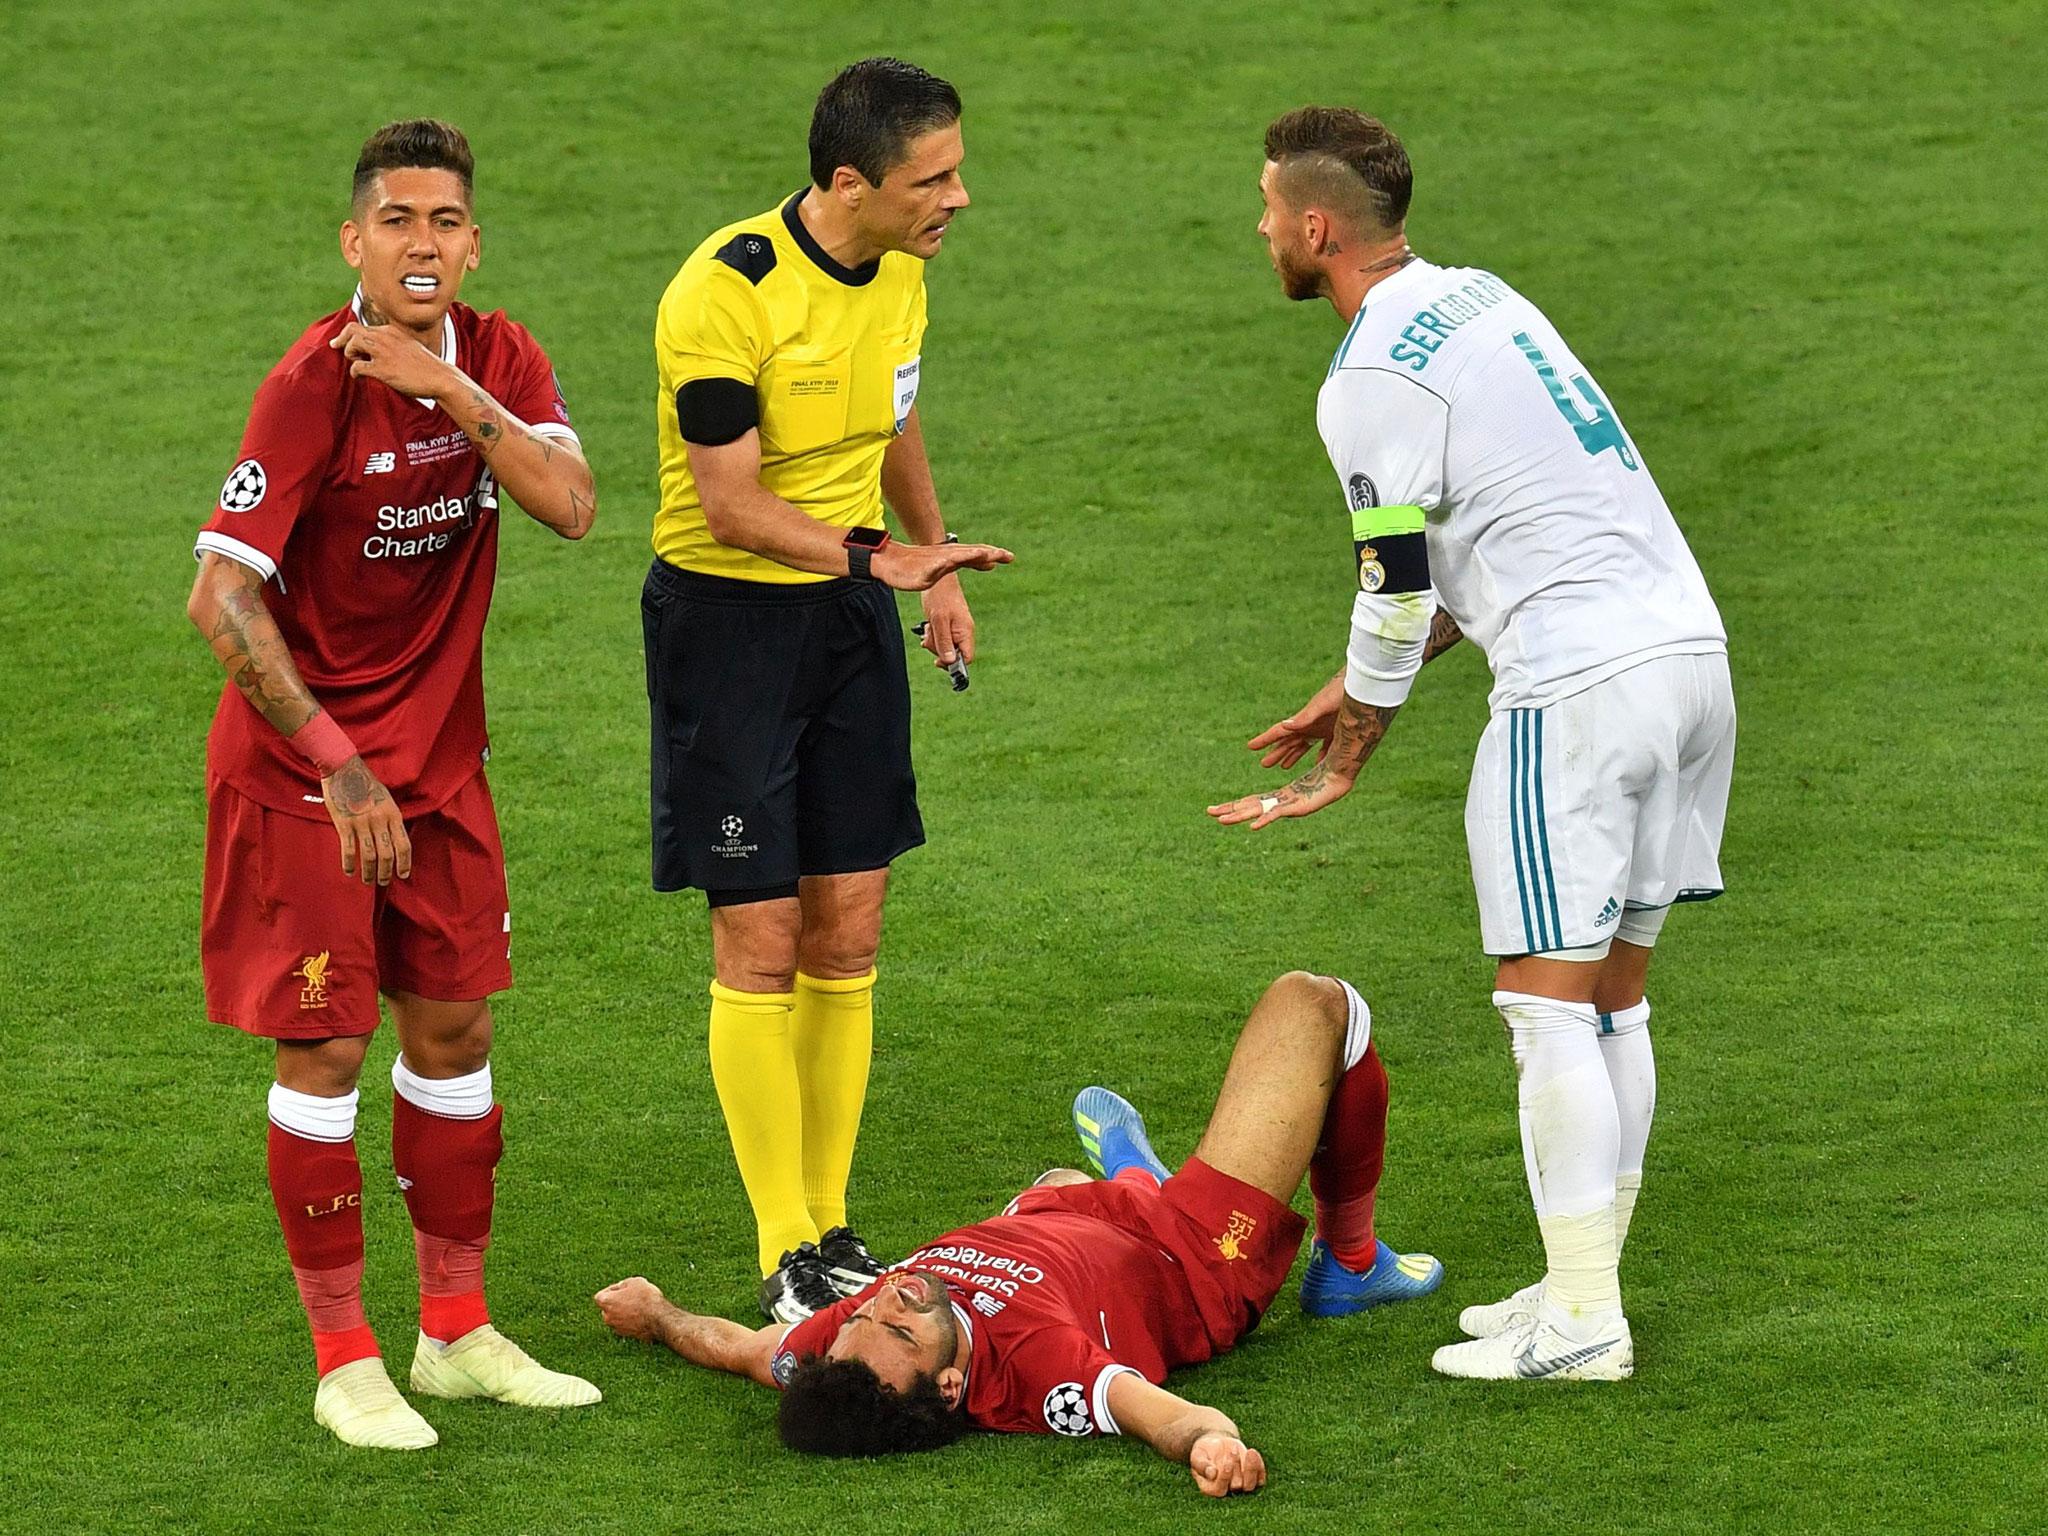 Sergio Ramos Haircut Champions League Final 2018 - The 